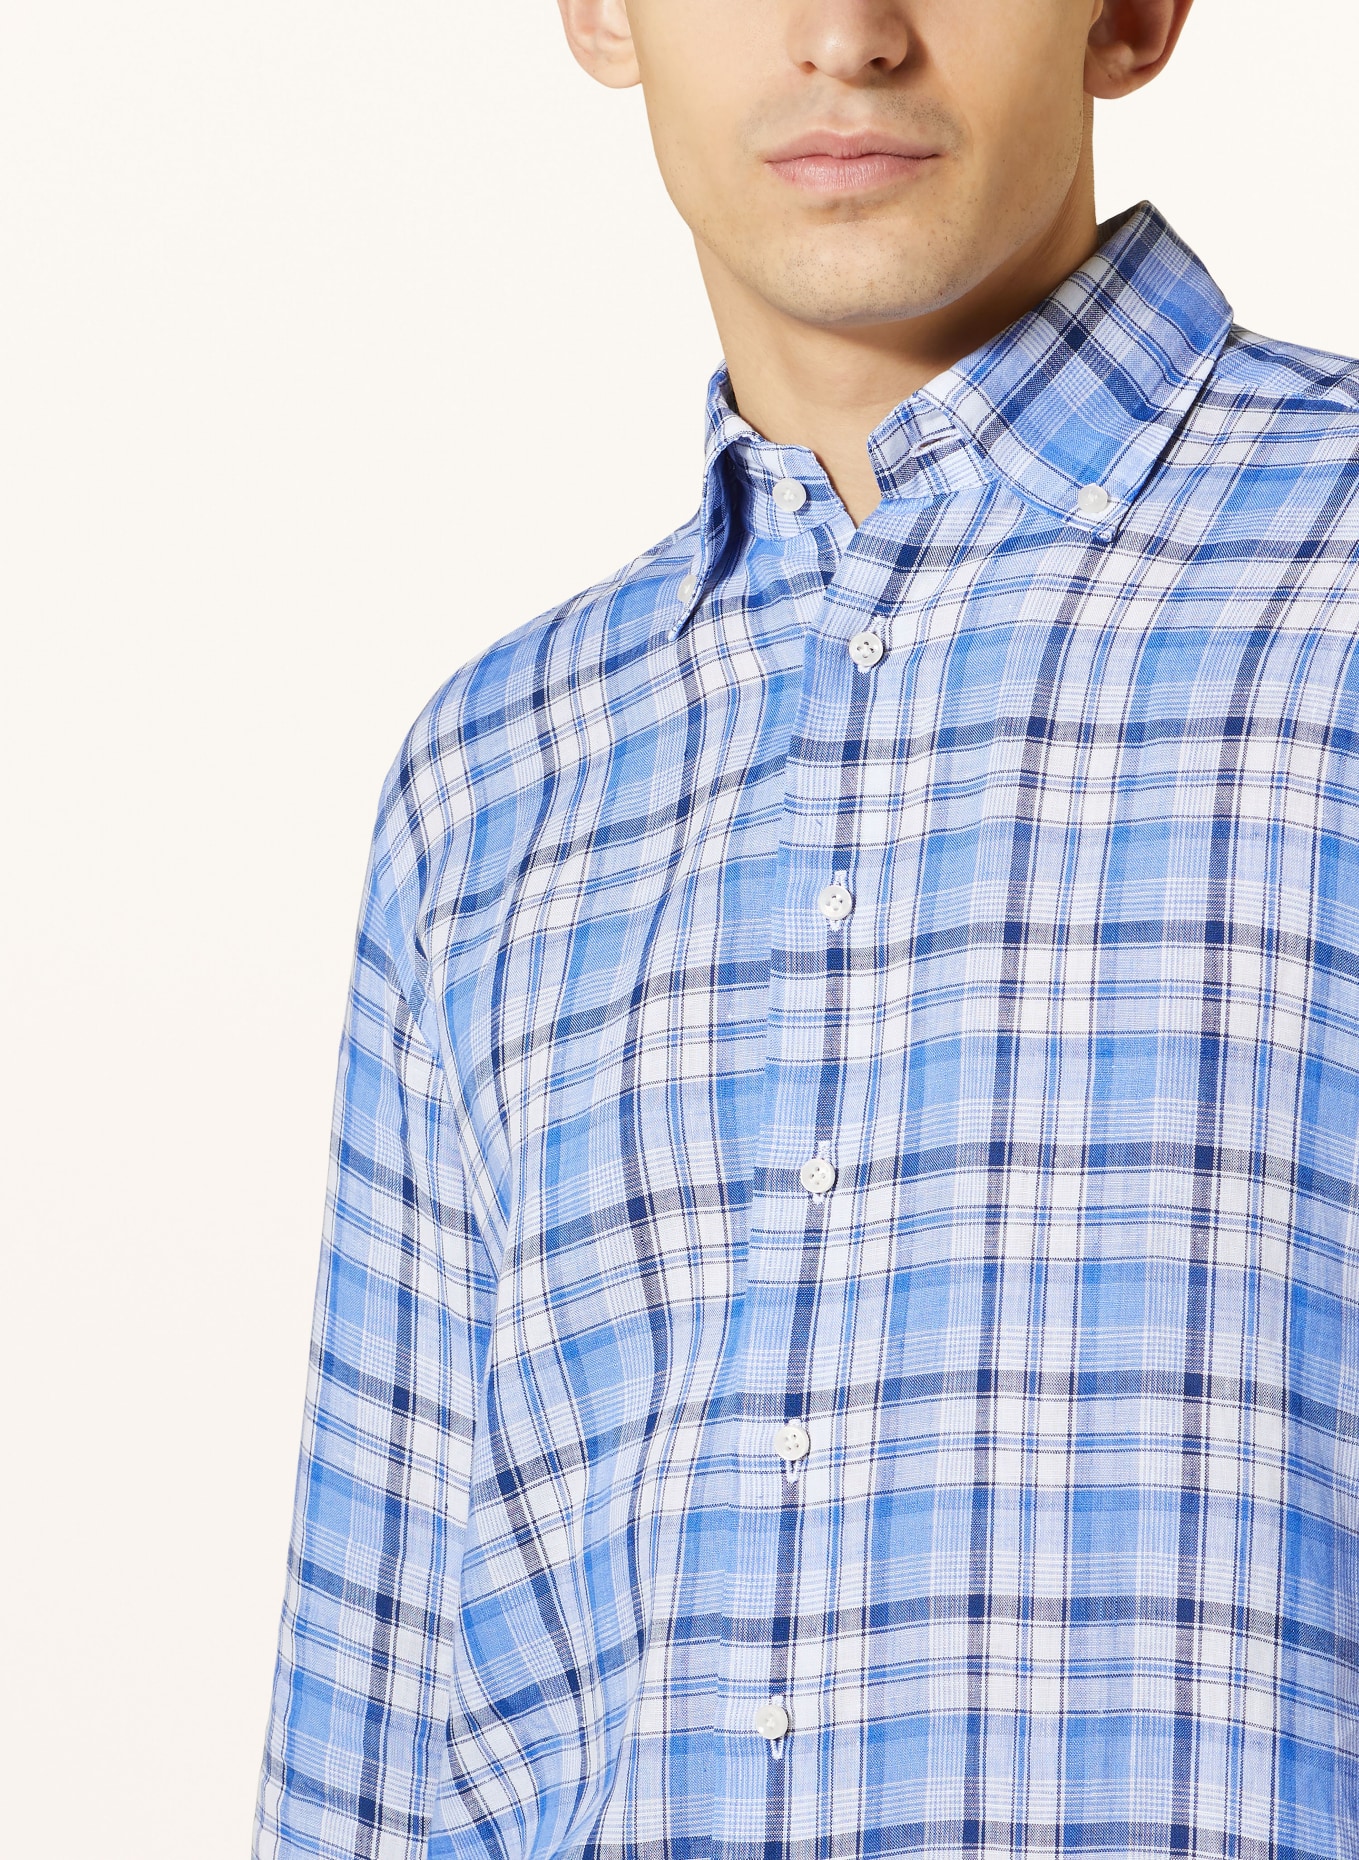 ARTIGIANO Linen shirt classic fit, Color: LIGHT BLUE/ DARK BLUE/ WHITE (Image 4)